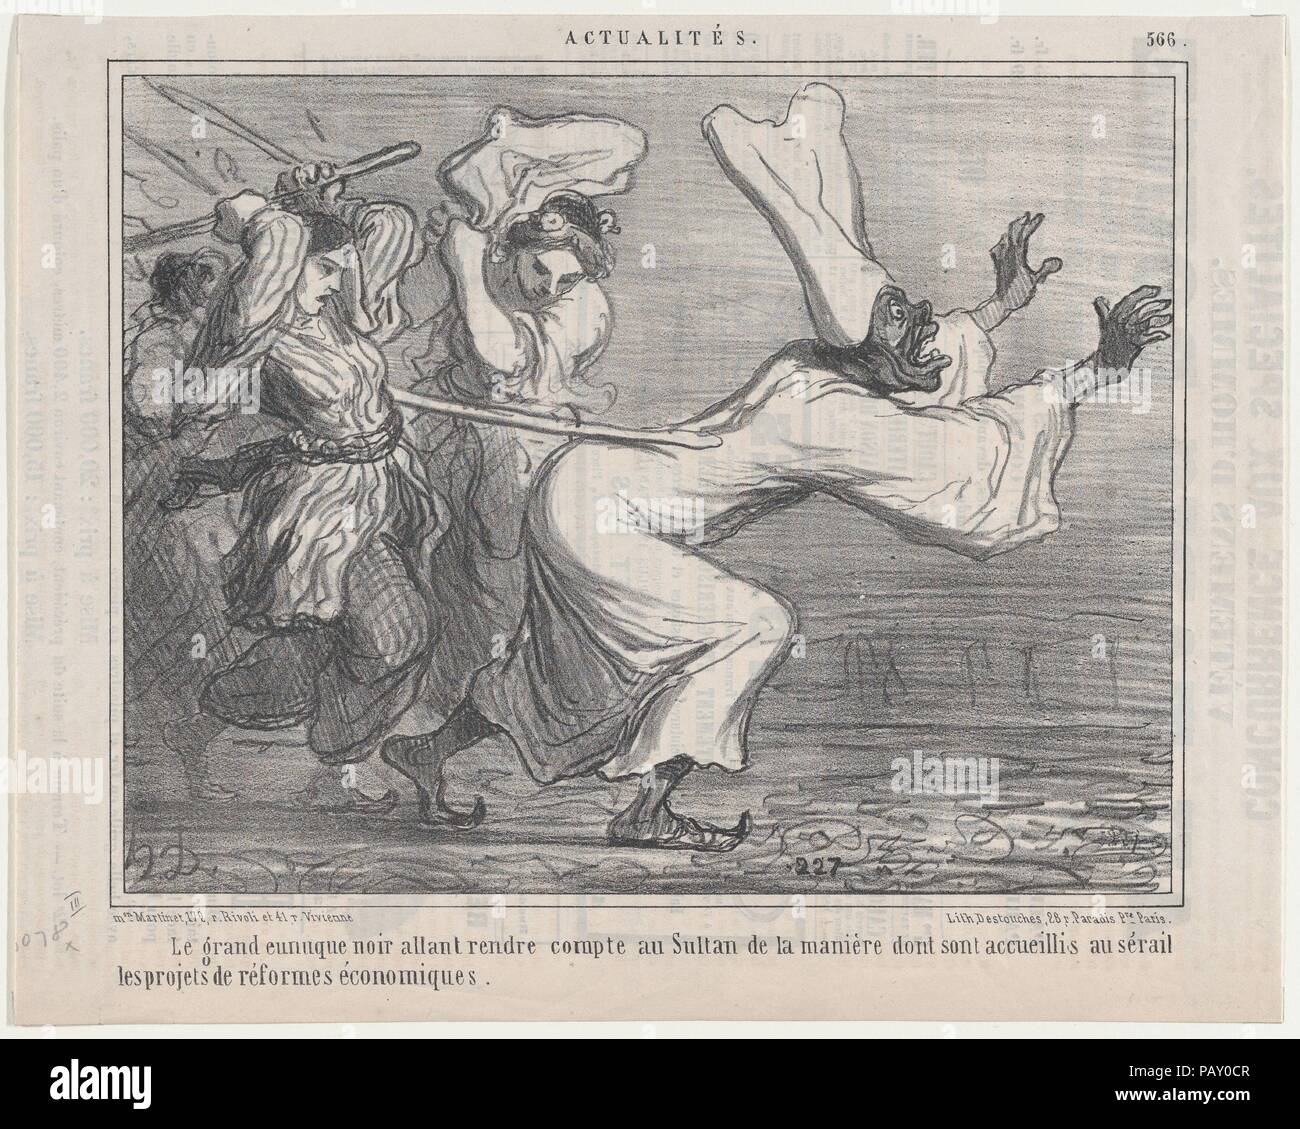 Le Grand noir eunuque allant rendre compte au Sultan..., da Actualités, pubblicato in Le Charivari, Settembre 18, 1858. Artista: Honoré Daumier (francese, Marsiglia 1808-1879 Valmondois). Dimensioni: foglio: 9 7/8 × 12 7/16 in. (25,1 × 31,6 cm) Immagine: 8 1/16 × 10 1/4 in. (20,4 × 26,1 cm). Stampante: Destouches (Parigi). Editore: Aaron Martinet (Francese, 1762-1841). Serie/Portfolio: Actualitès. Data: 18 settembre 1858. Museo: Metropolitan Museum of Art di New York, Stati Uniti d'America. Foto Stock